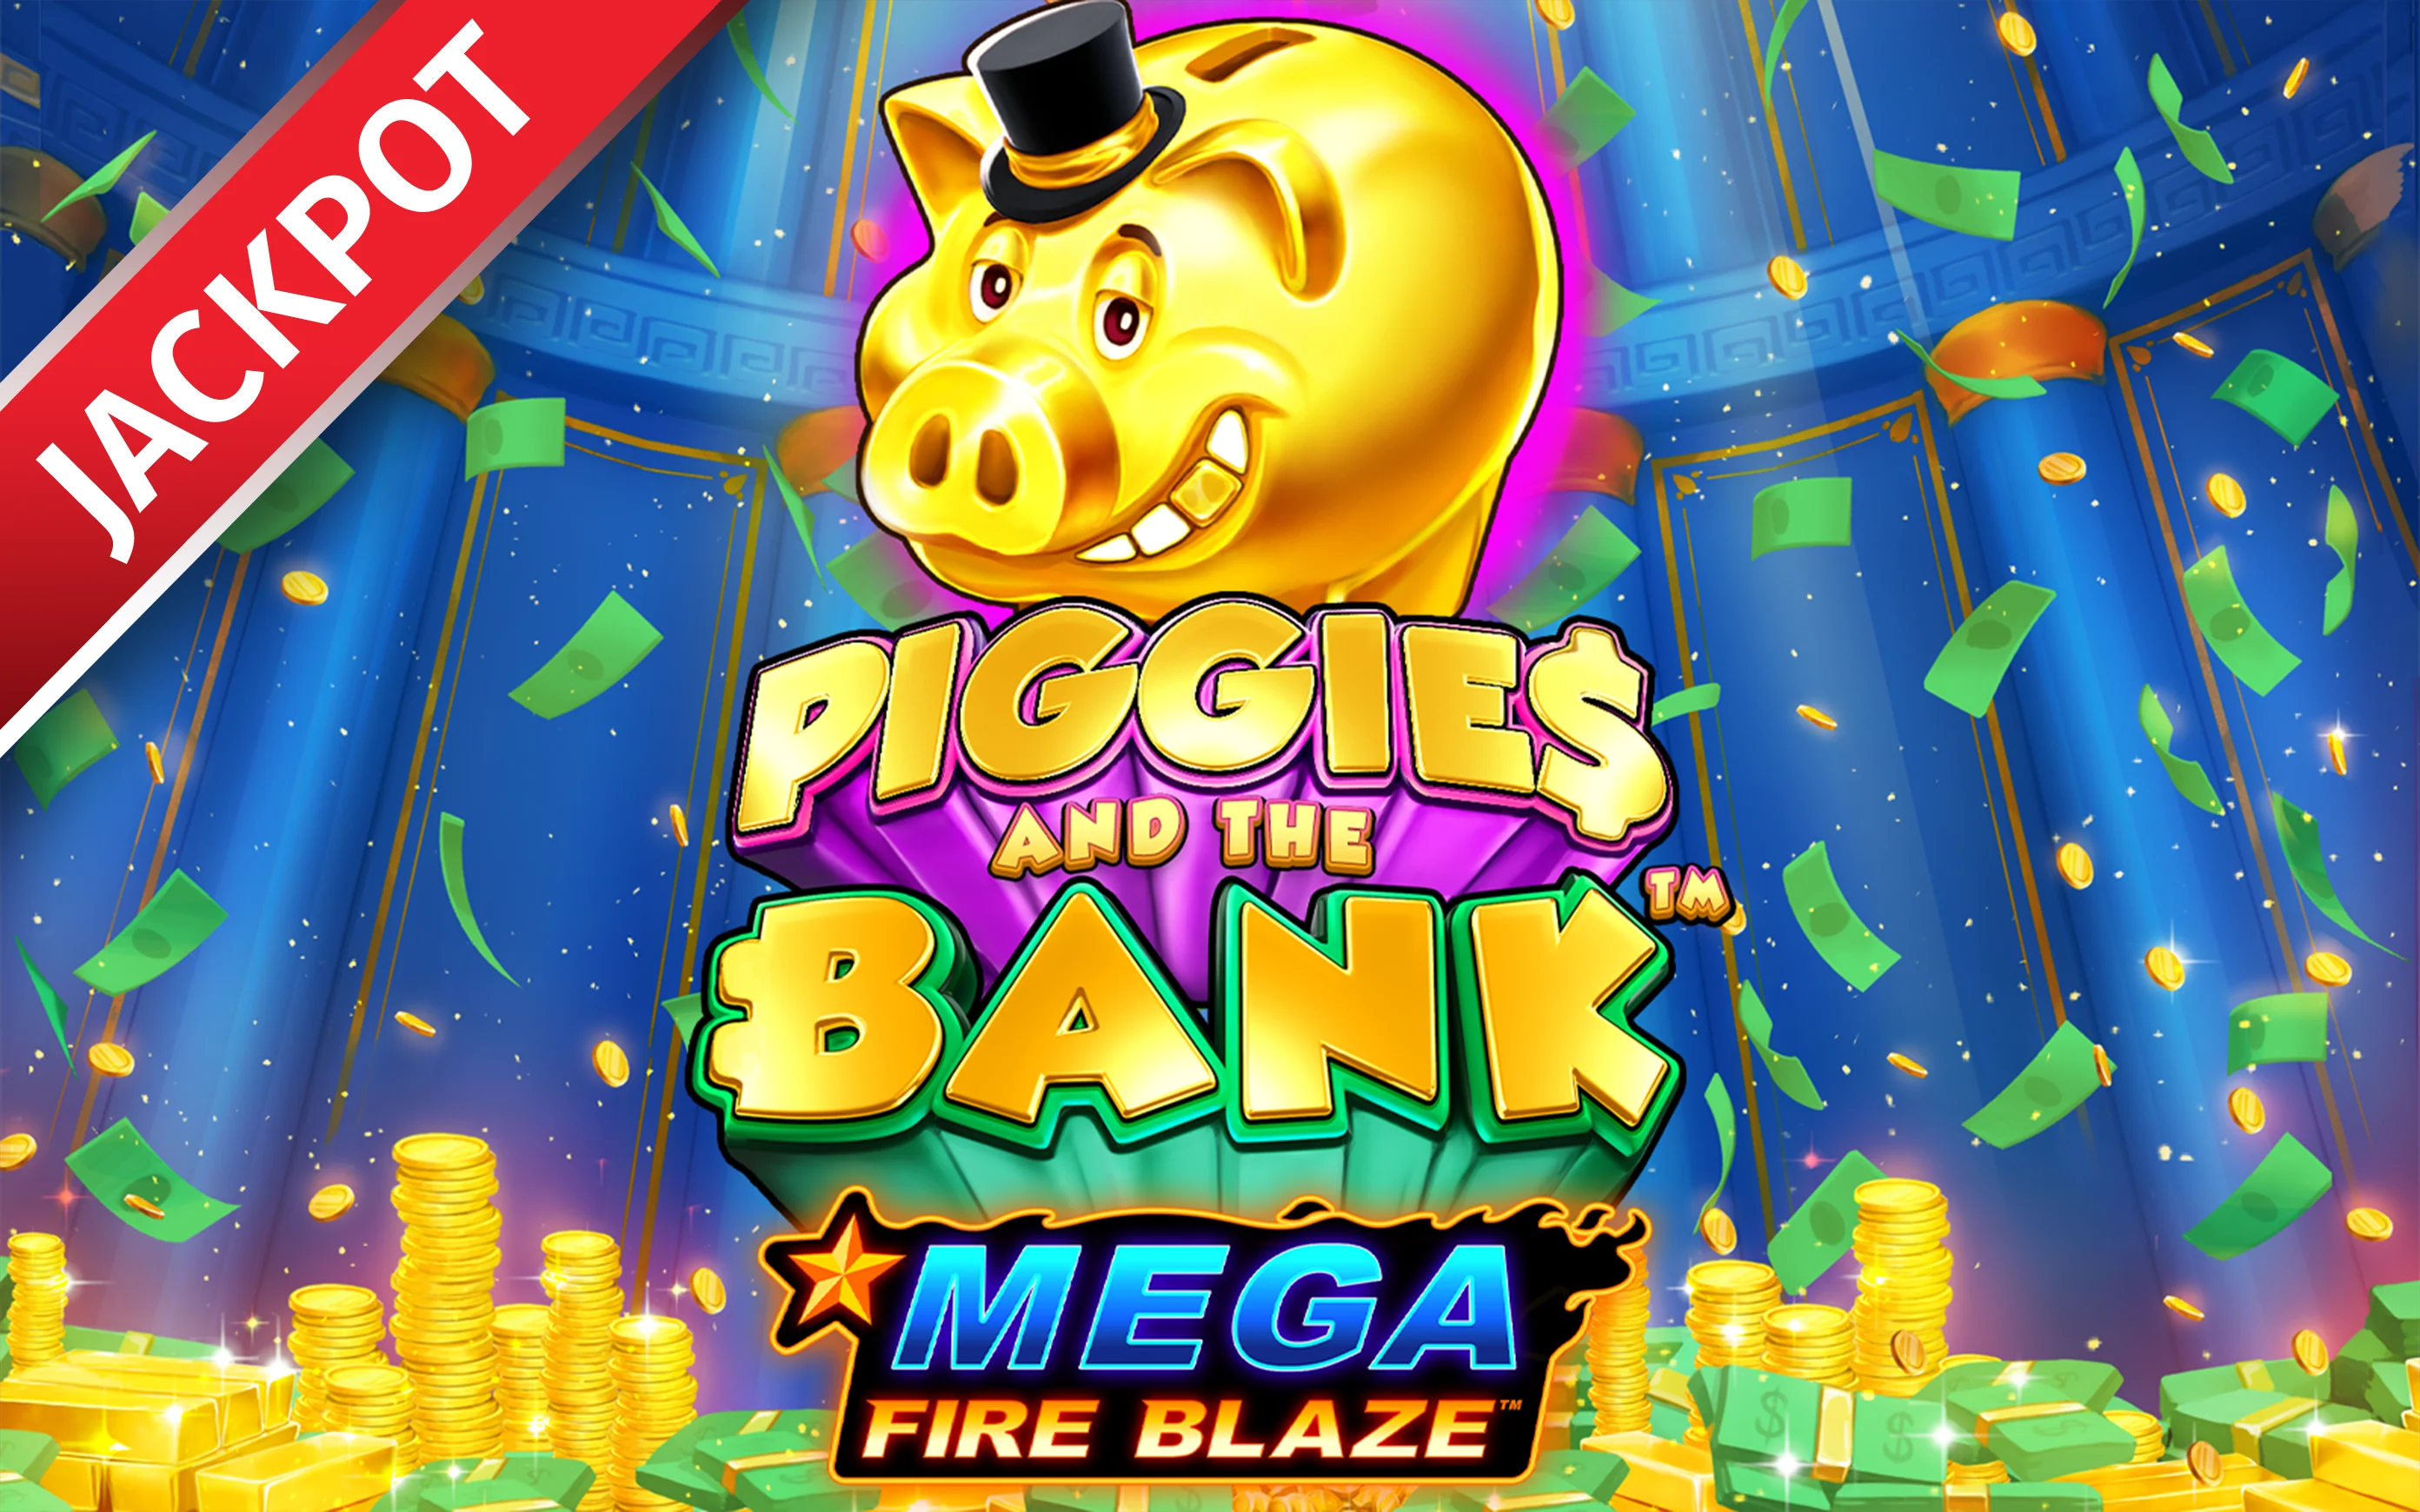 Juega a Mega Fire Blaze: Piggies and the Bank™ en el casino en línea de Starcasino.be